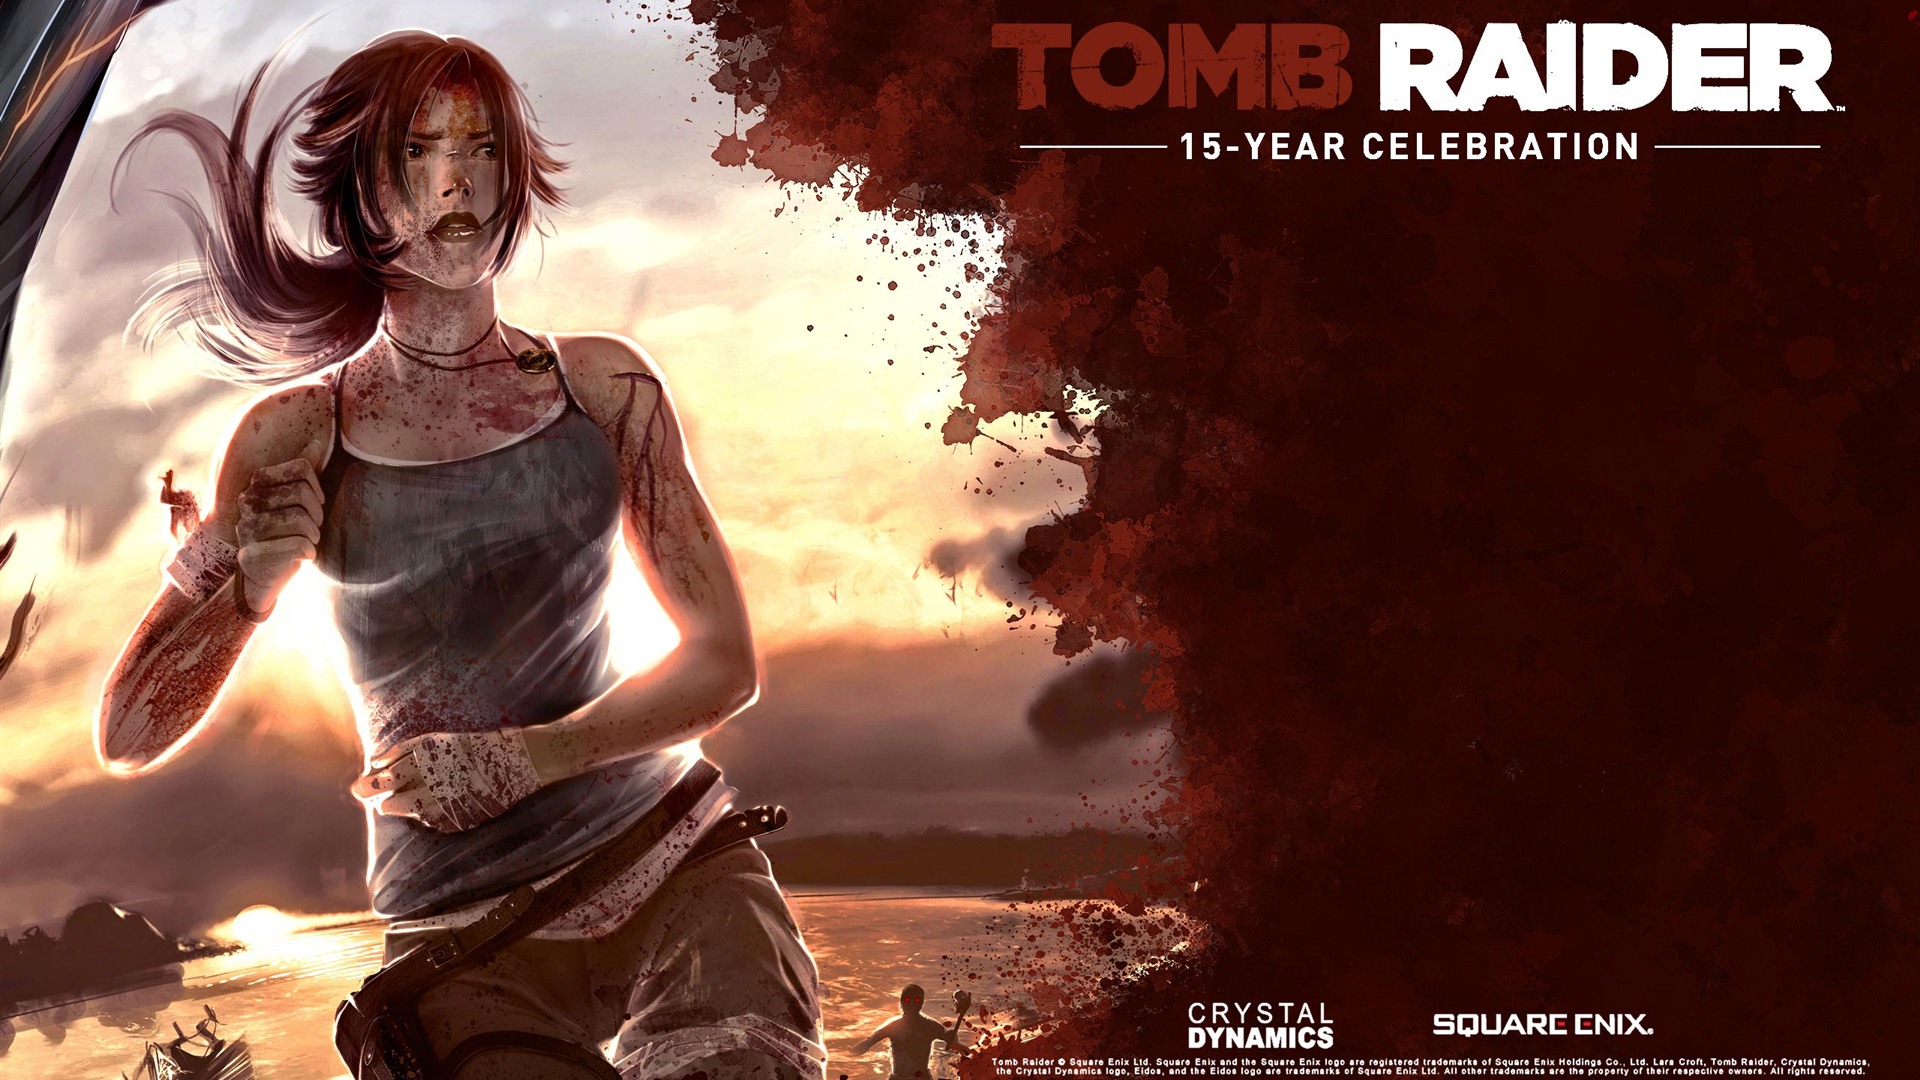 Tomb Raider 15-Year Celebration 古墓丽影15周年纪念版 高清壁纸16 - 1920x1080